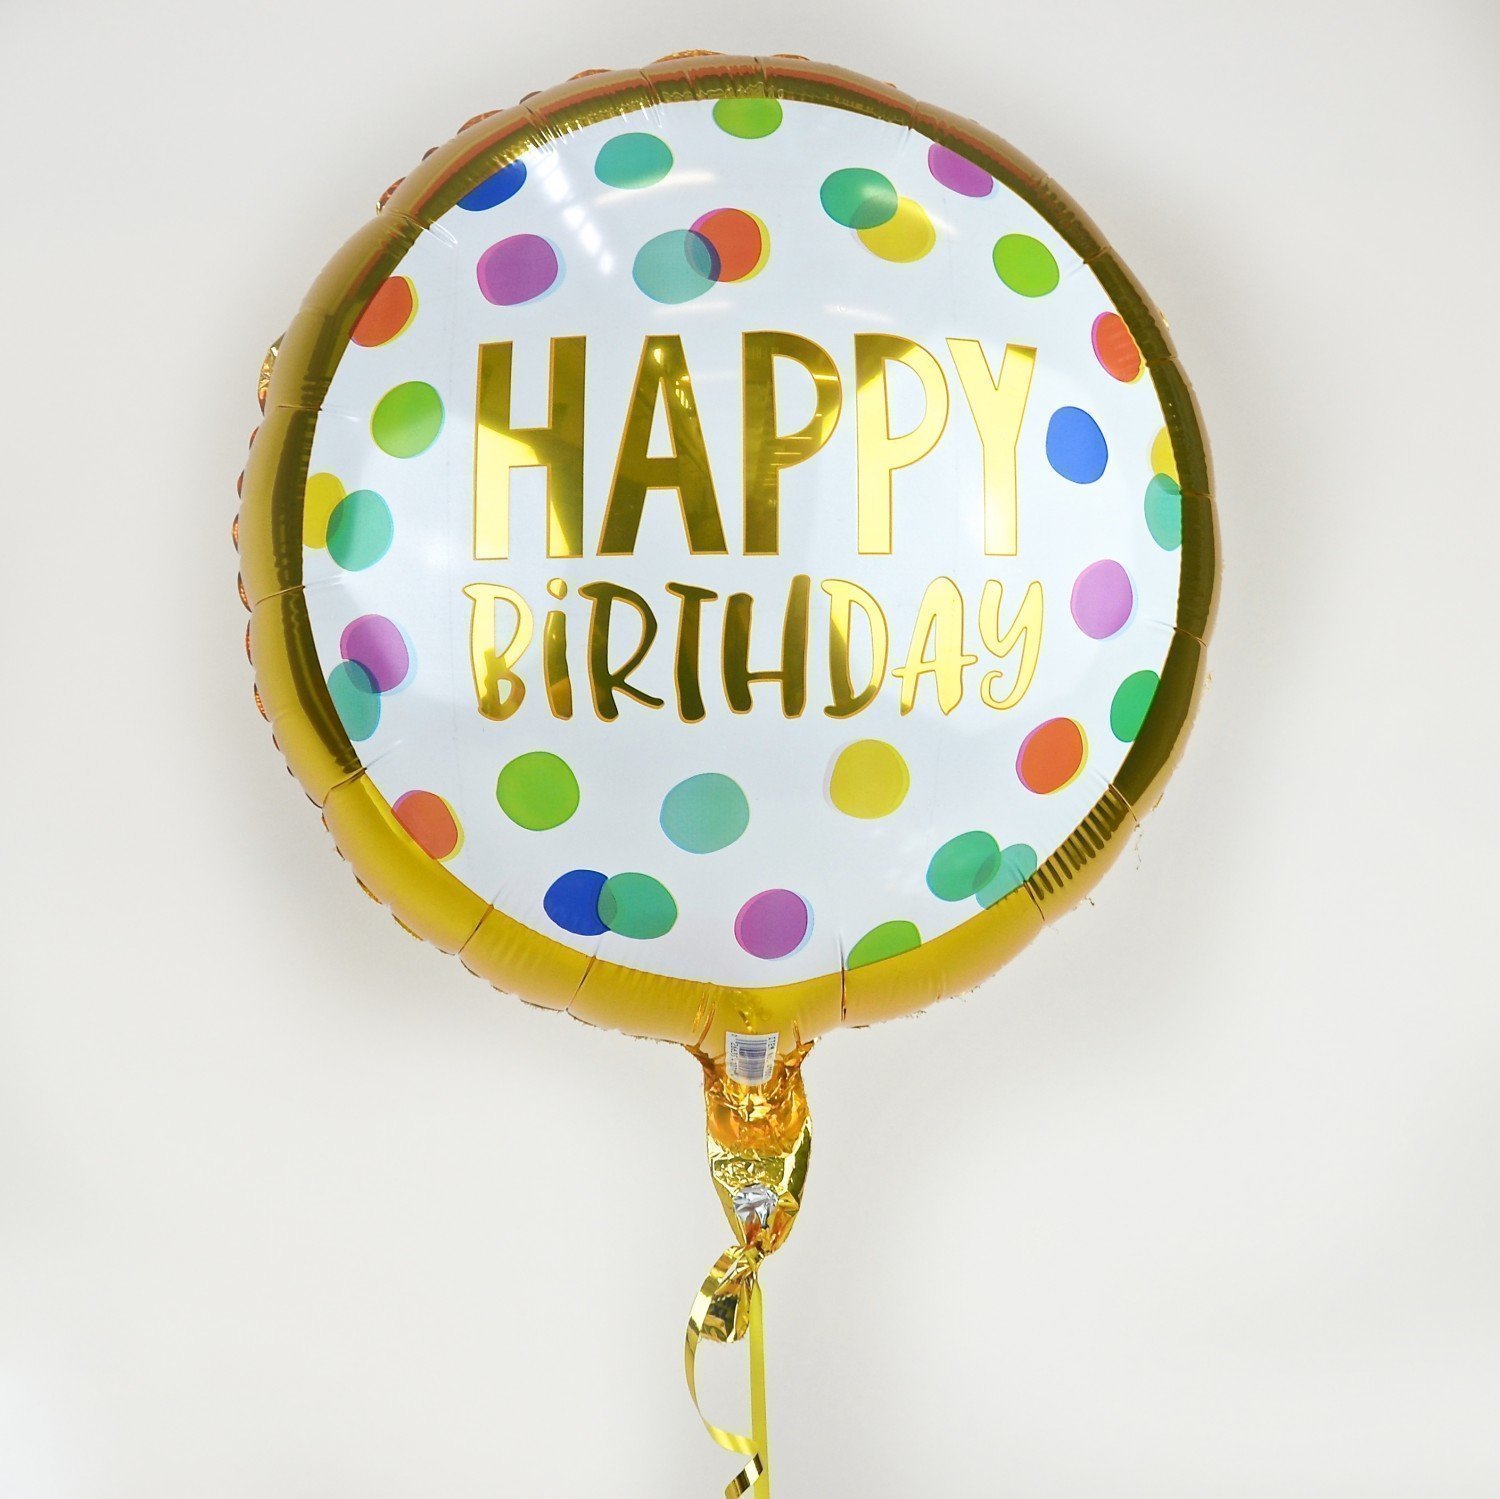 Cutie Pie Birthday - Balloon